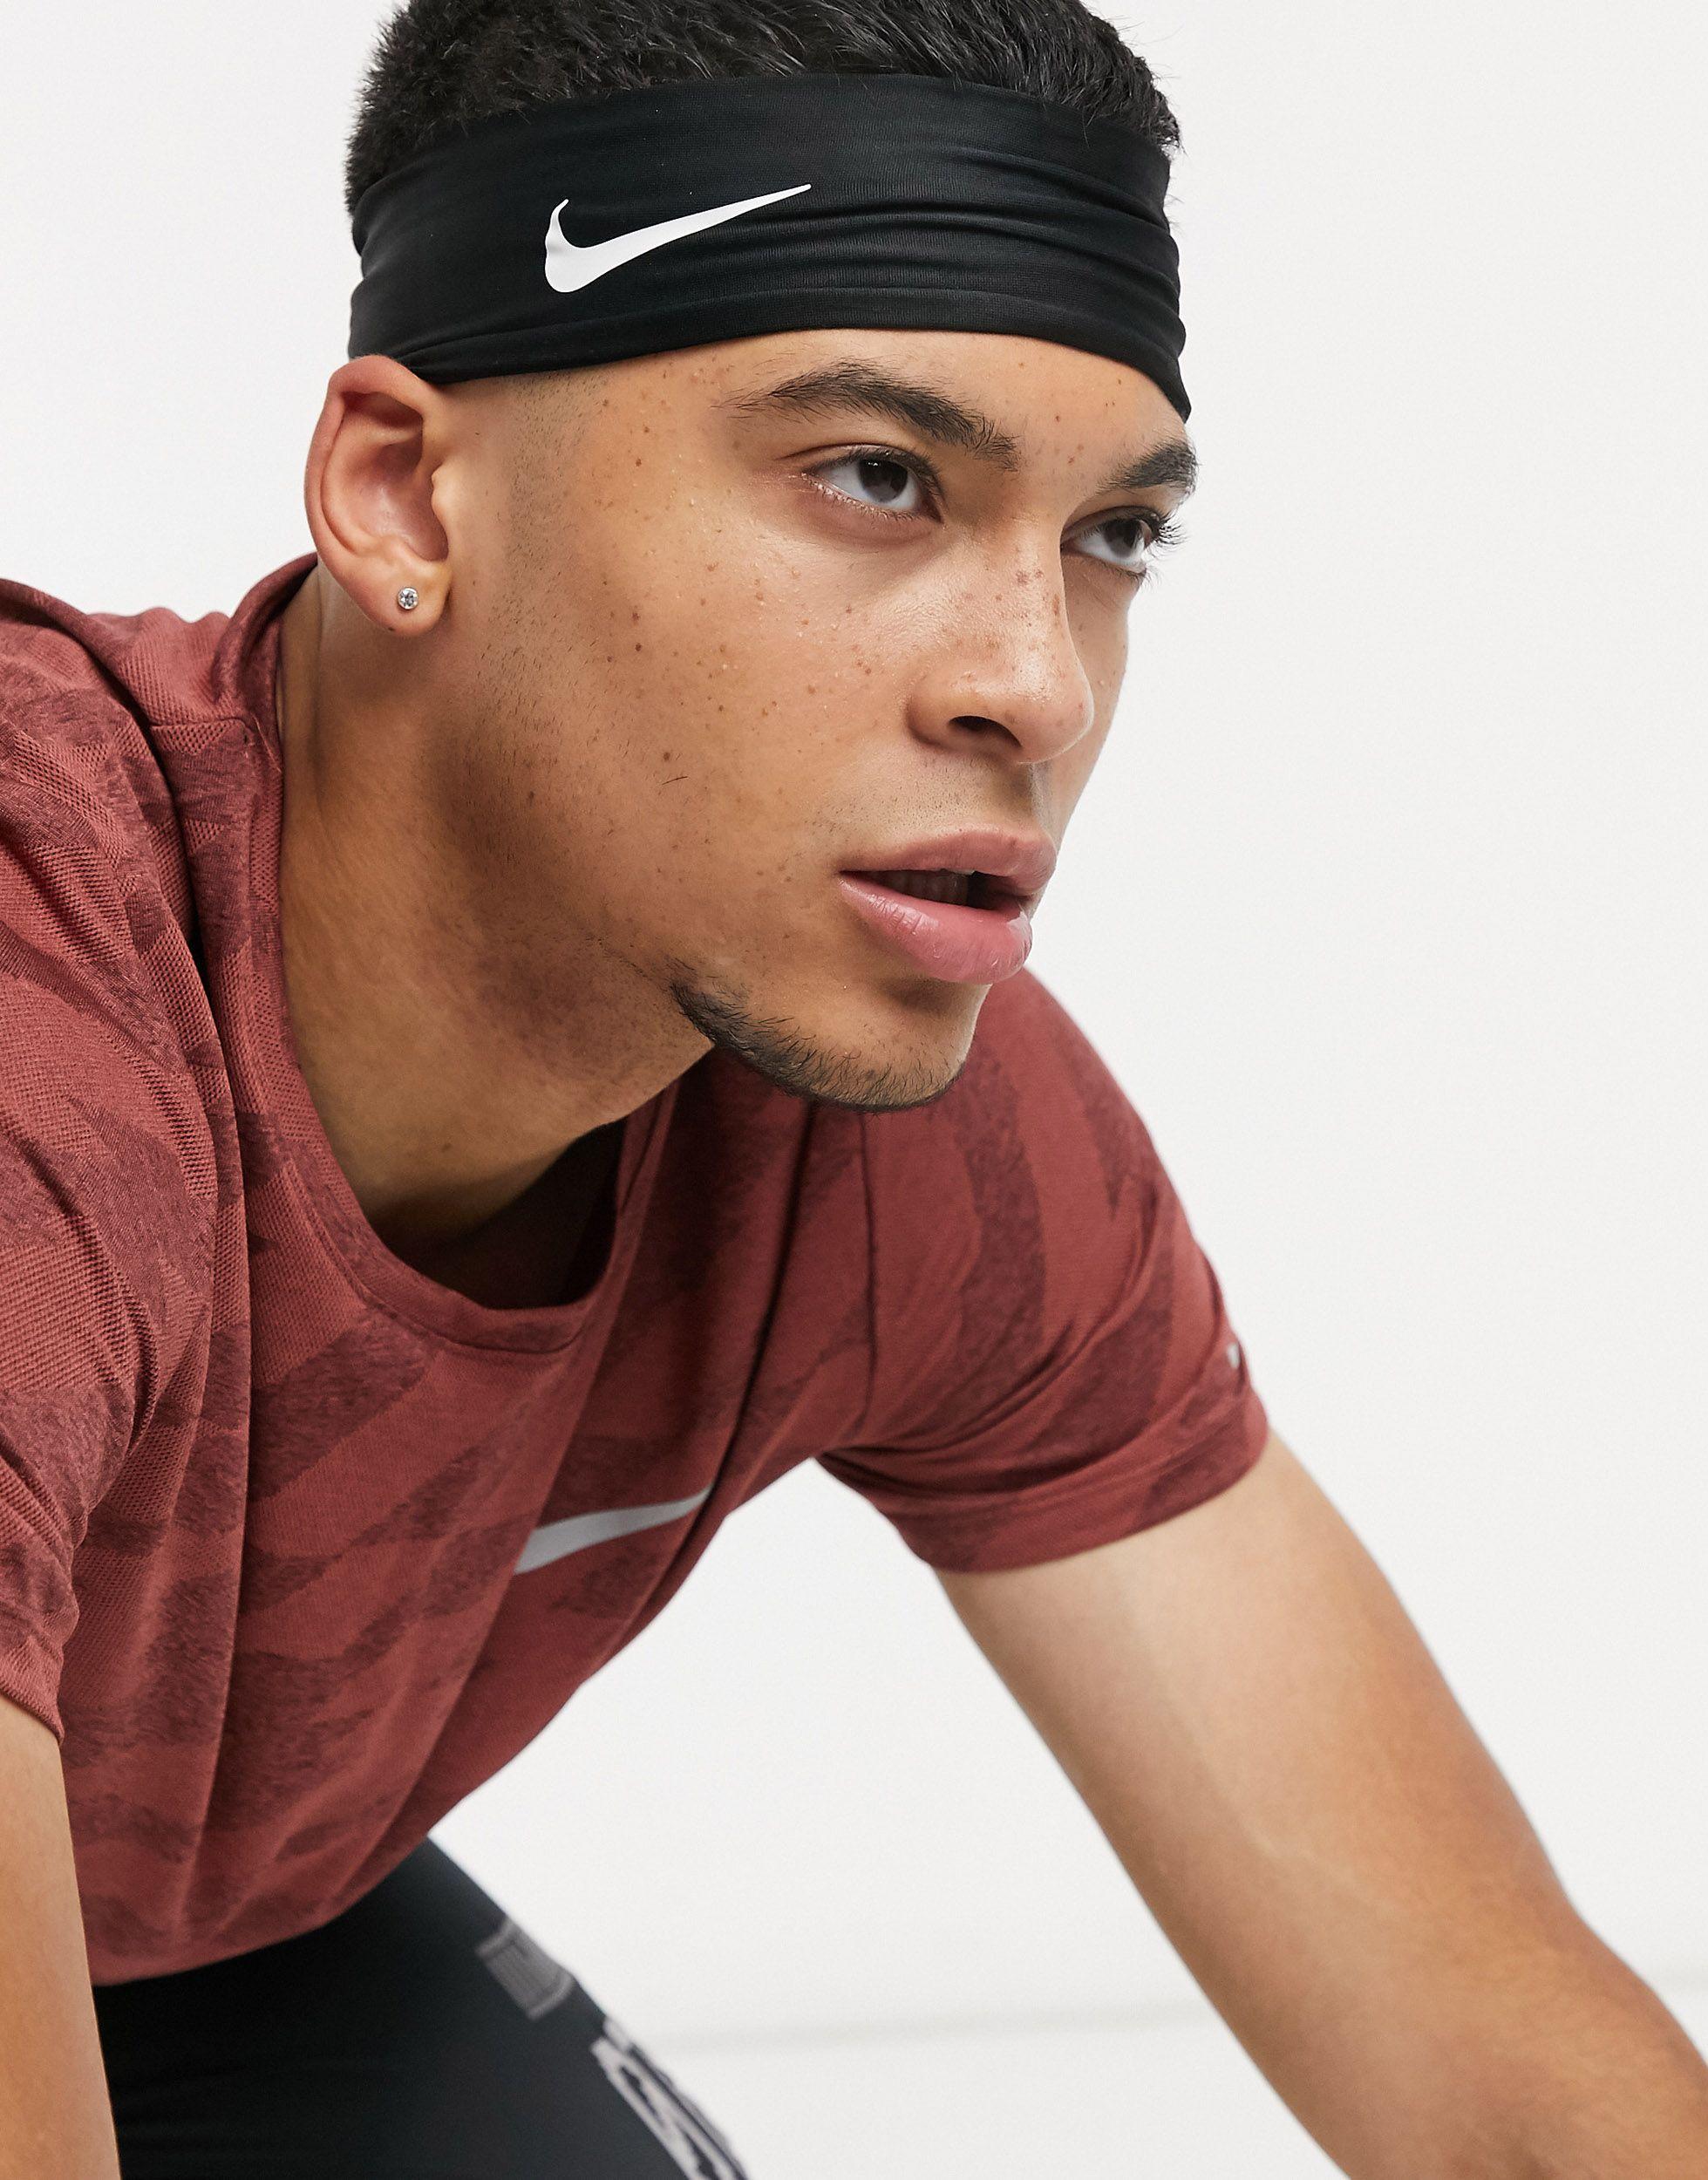 Nike Fury повязка. Повязка Nike Headband. Nike Fury Headband. Nike.Training Fury повязка. Найк на голову